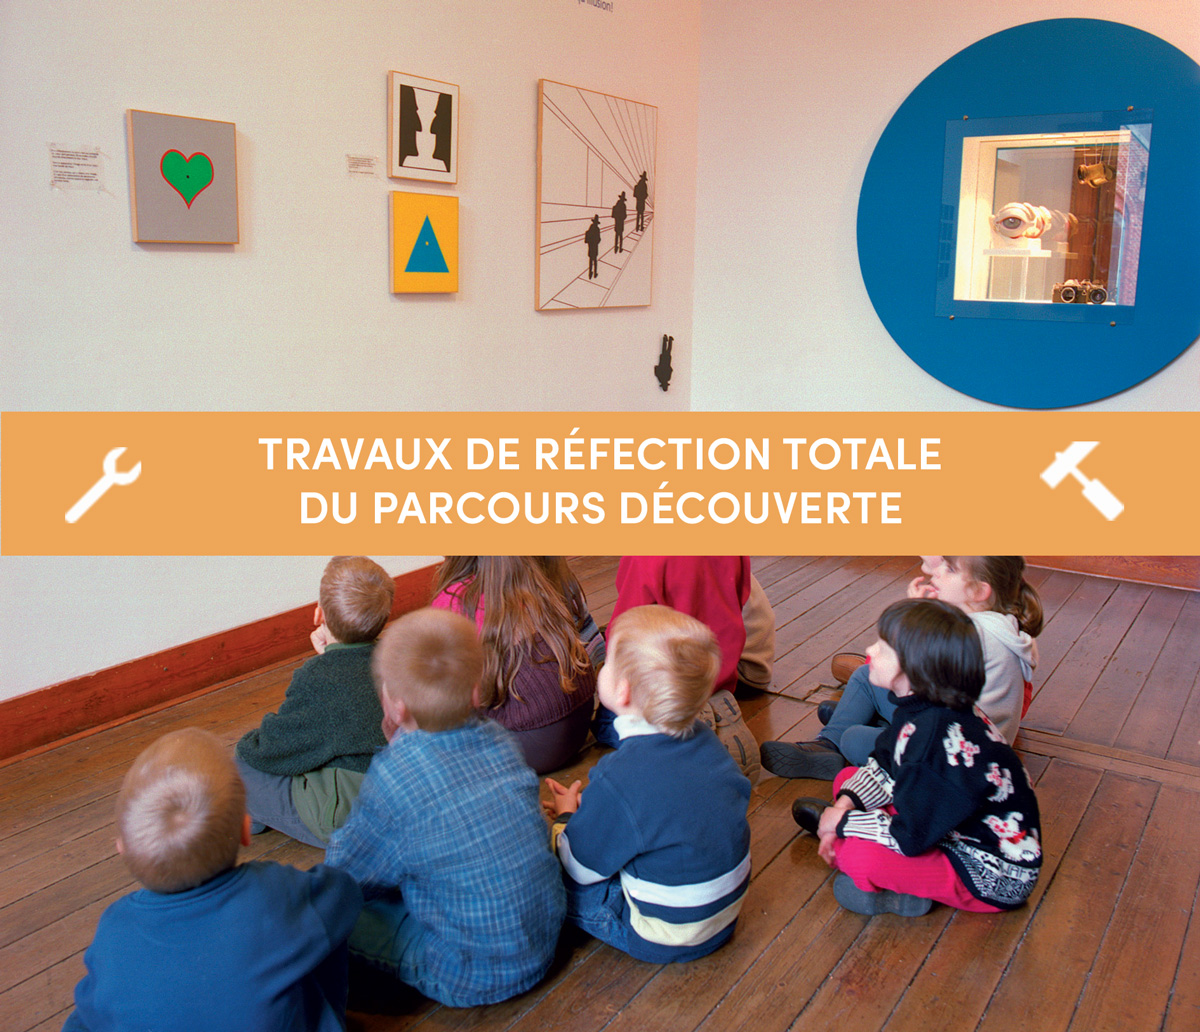 Musee/Parcours-découverte-copyR-reafectation.jpg